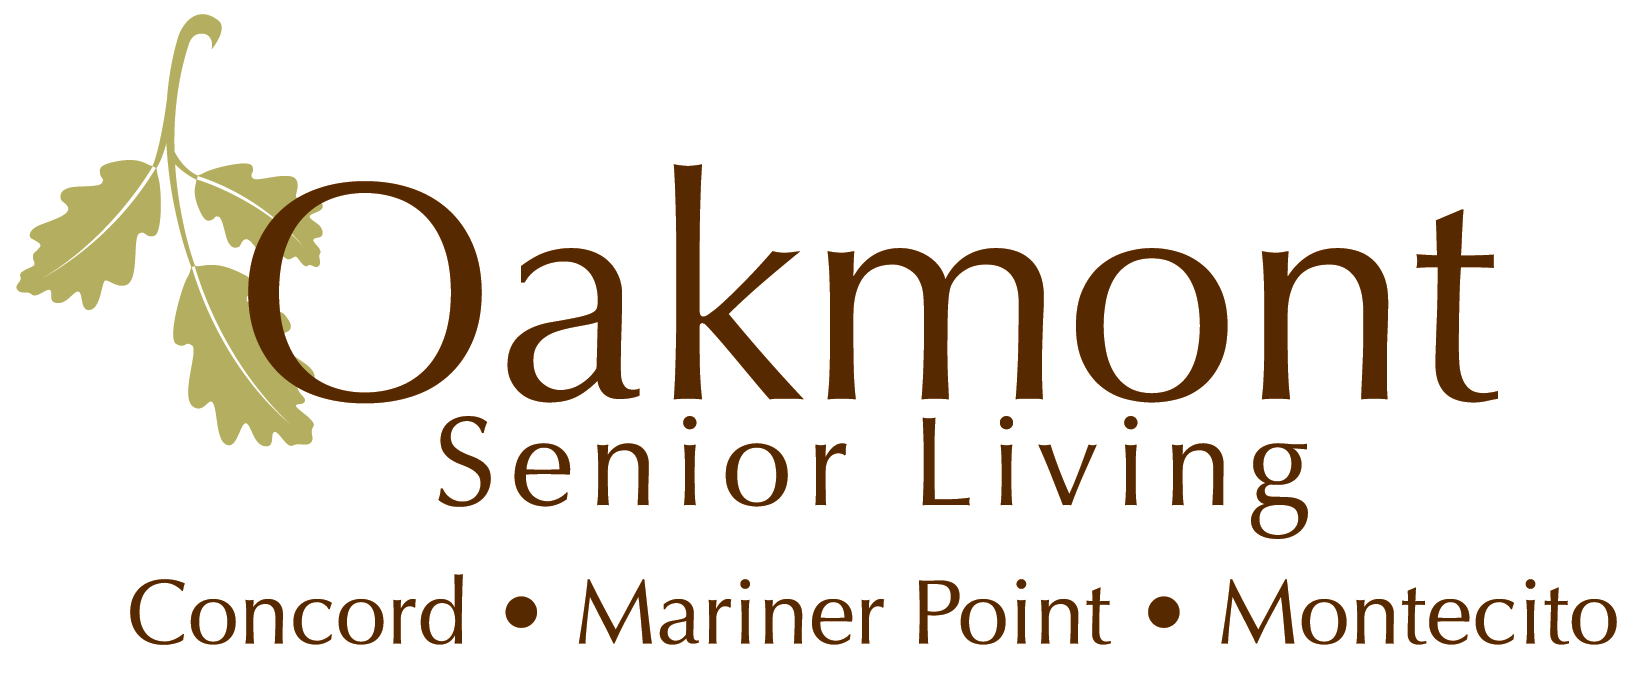 E. Oakmont Senior Living (Gold)